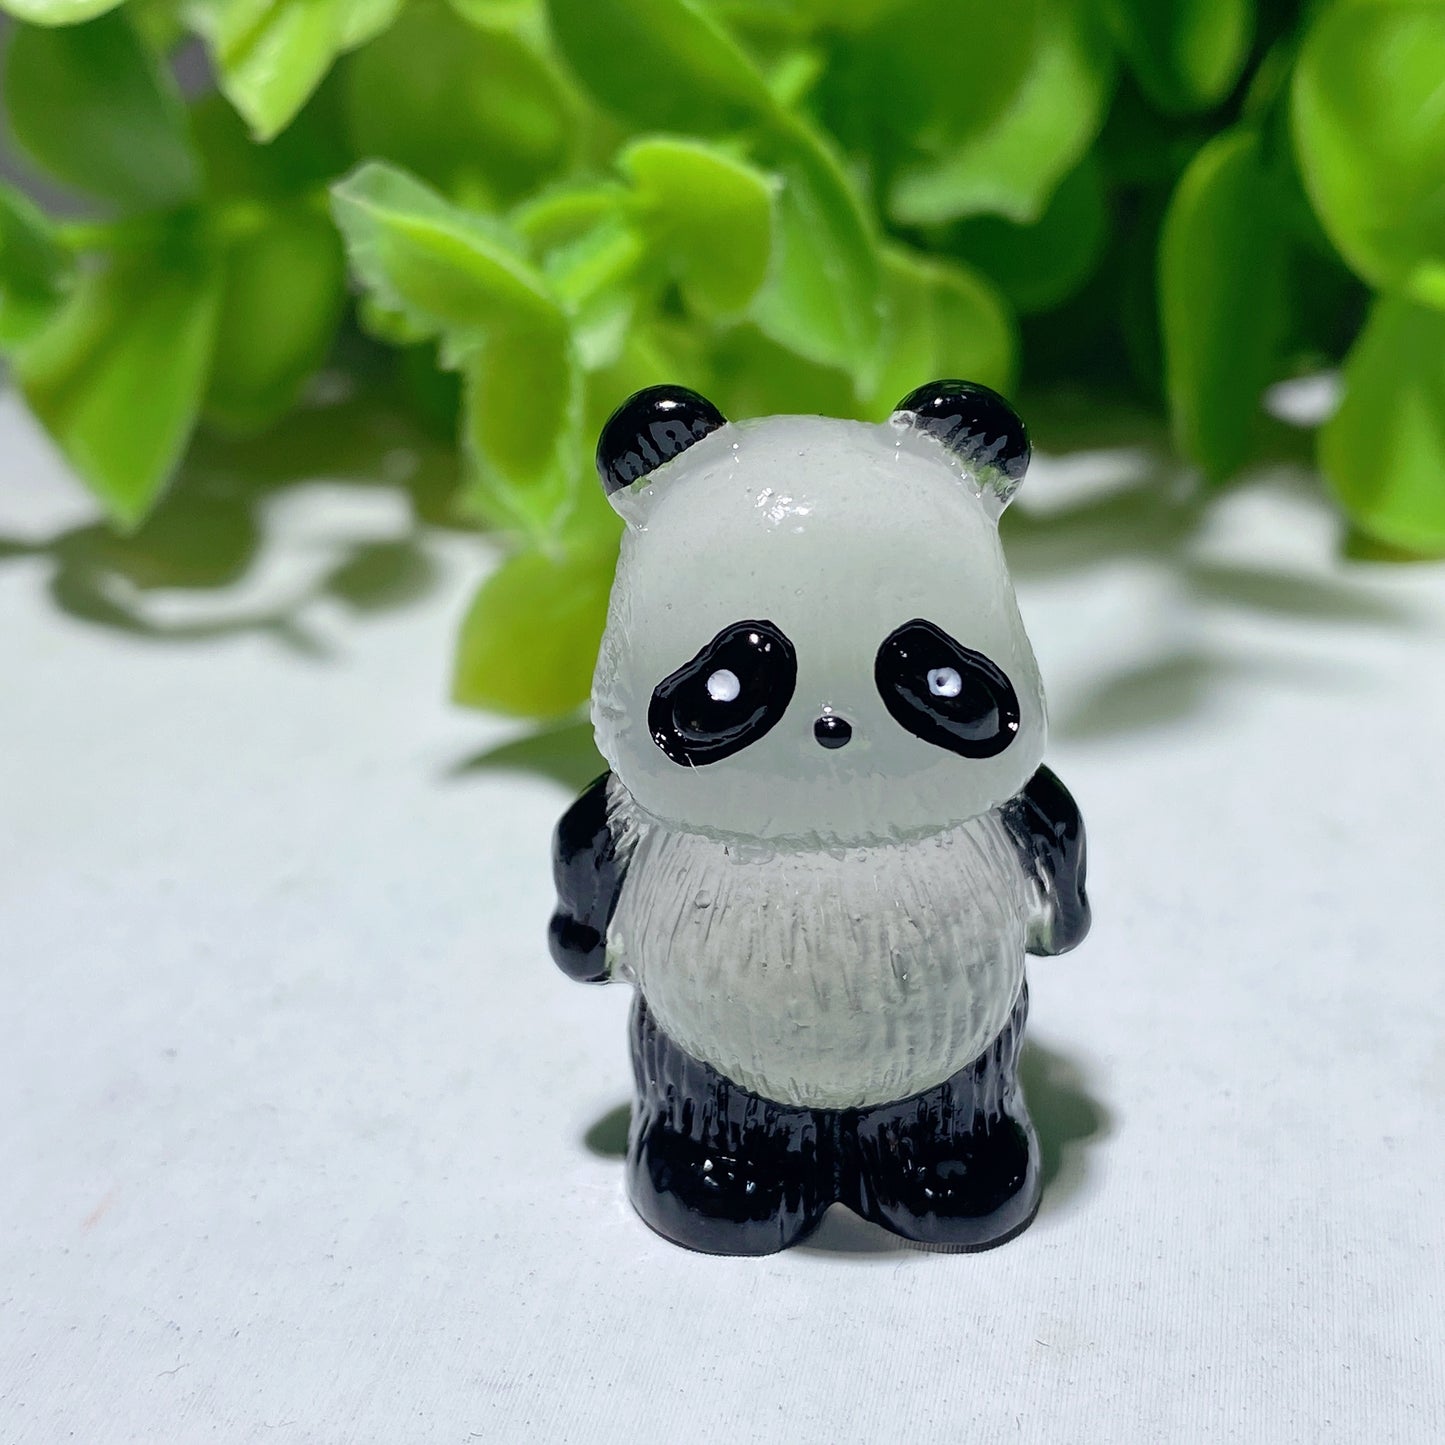 1.2" Resin Luminous Panda Bulk Wholesale